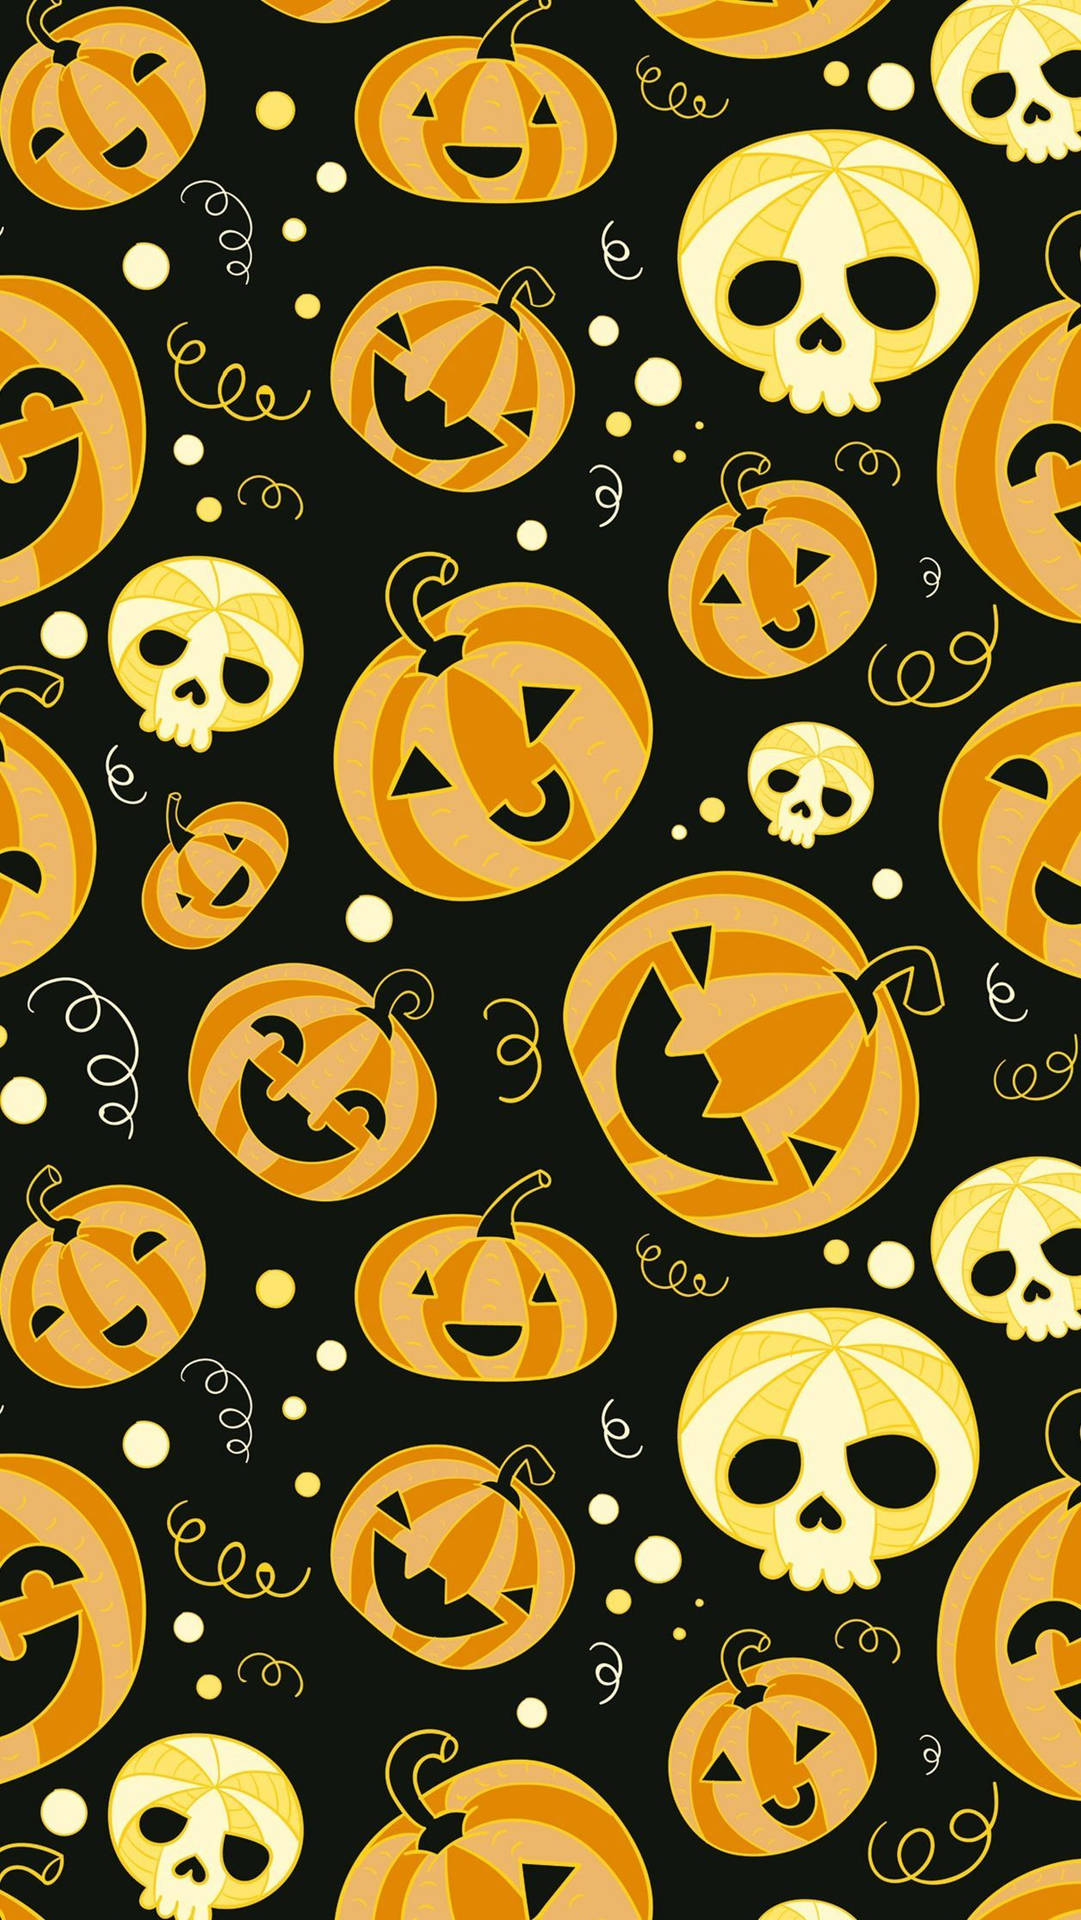 ¡ponleun Toque Moderno A Este Halloween Espeluznante! Fondo de pantalla